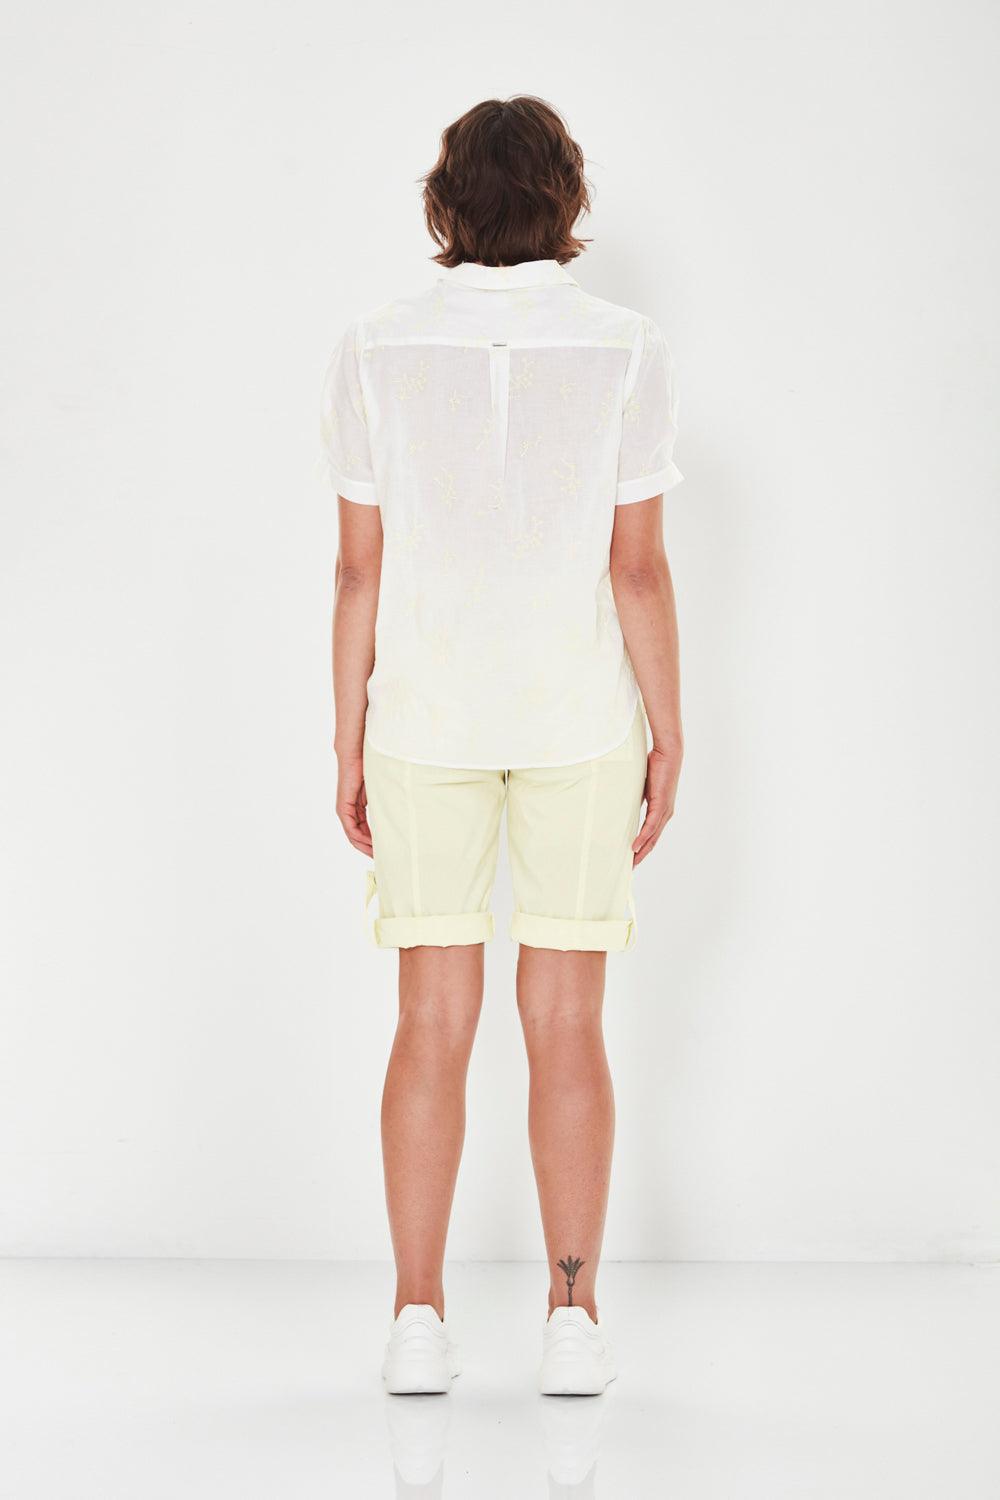 Mistborn Shirt - White/Lemon - Shirt VERGE